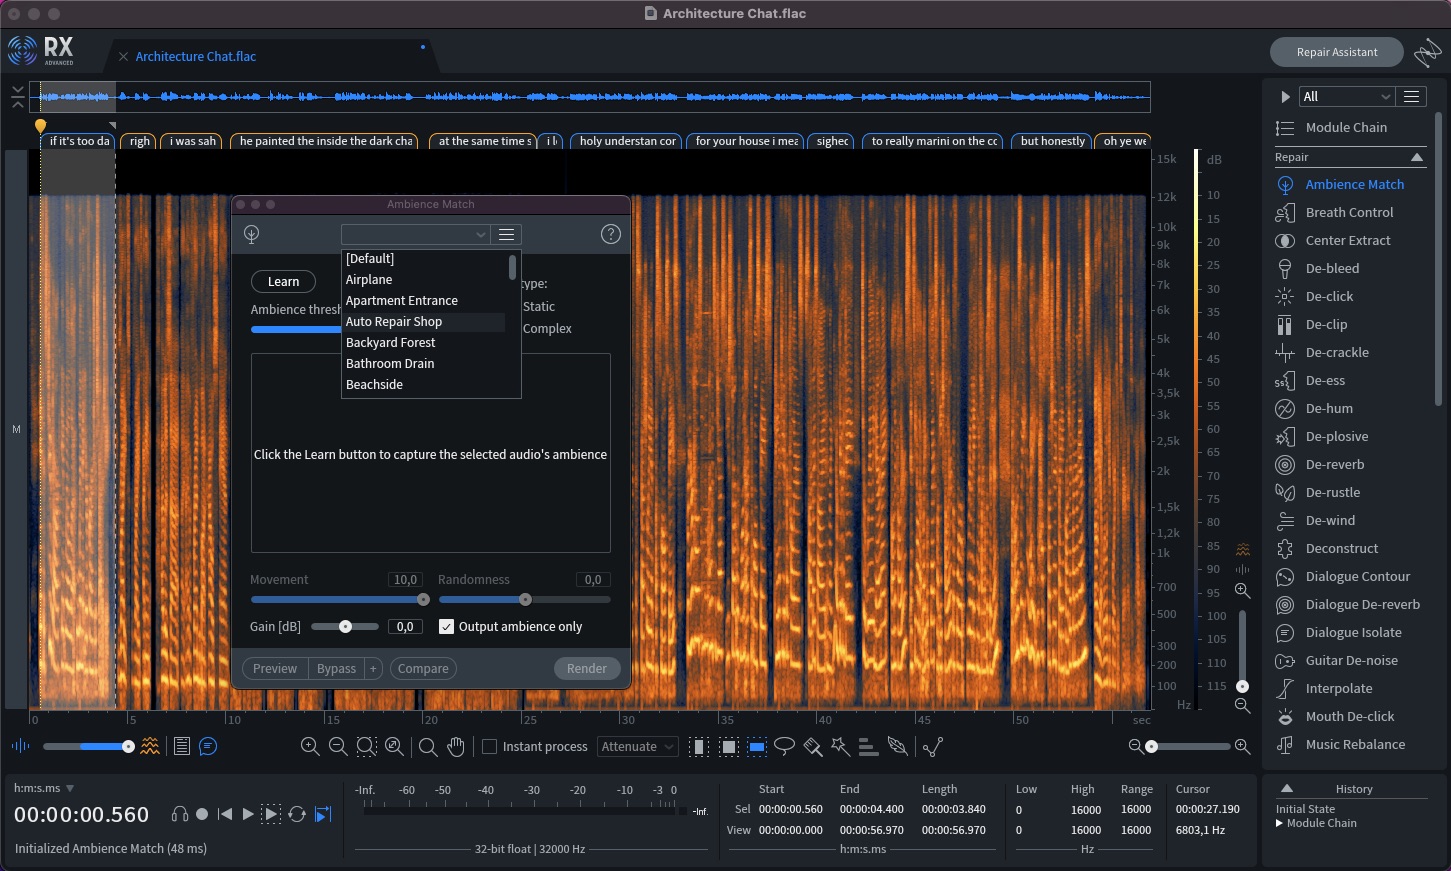 iZotope RX 10 Audio Editor Advanced v10.4.0 Windows